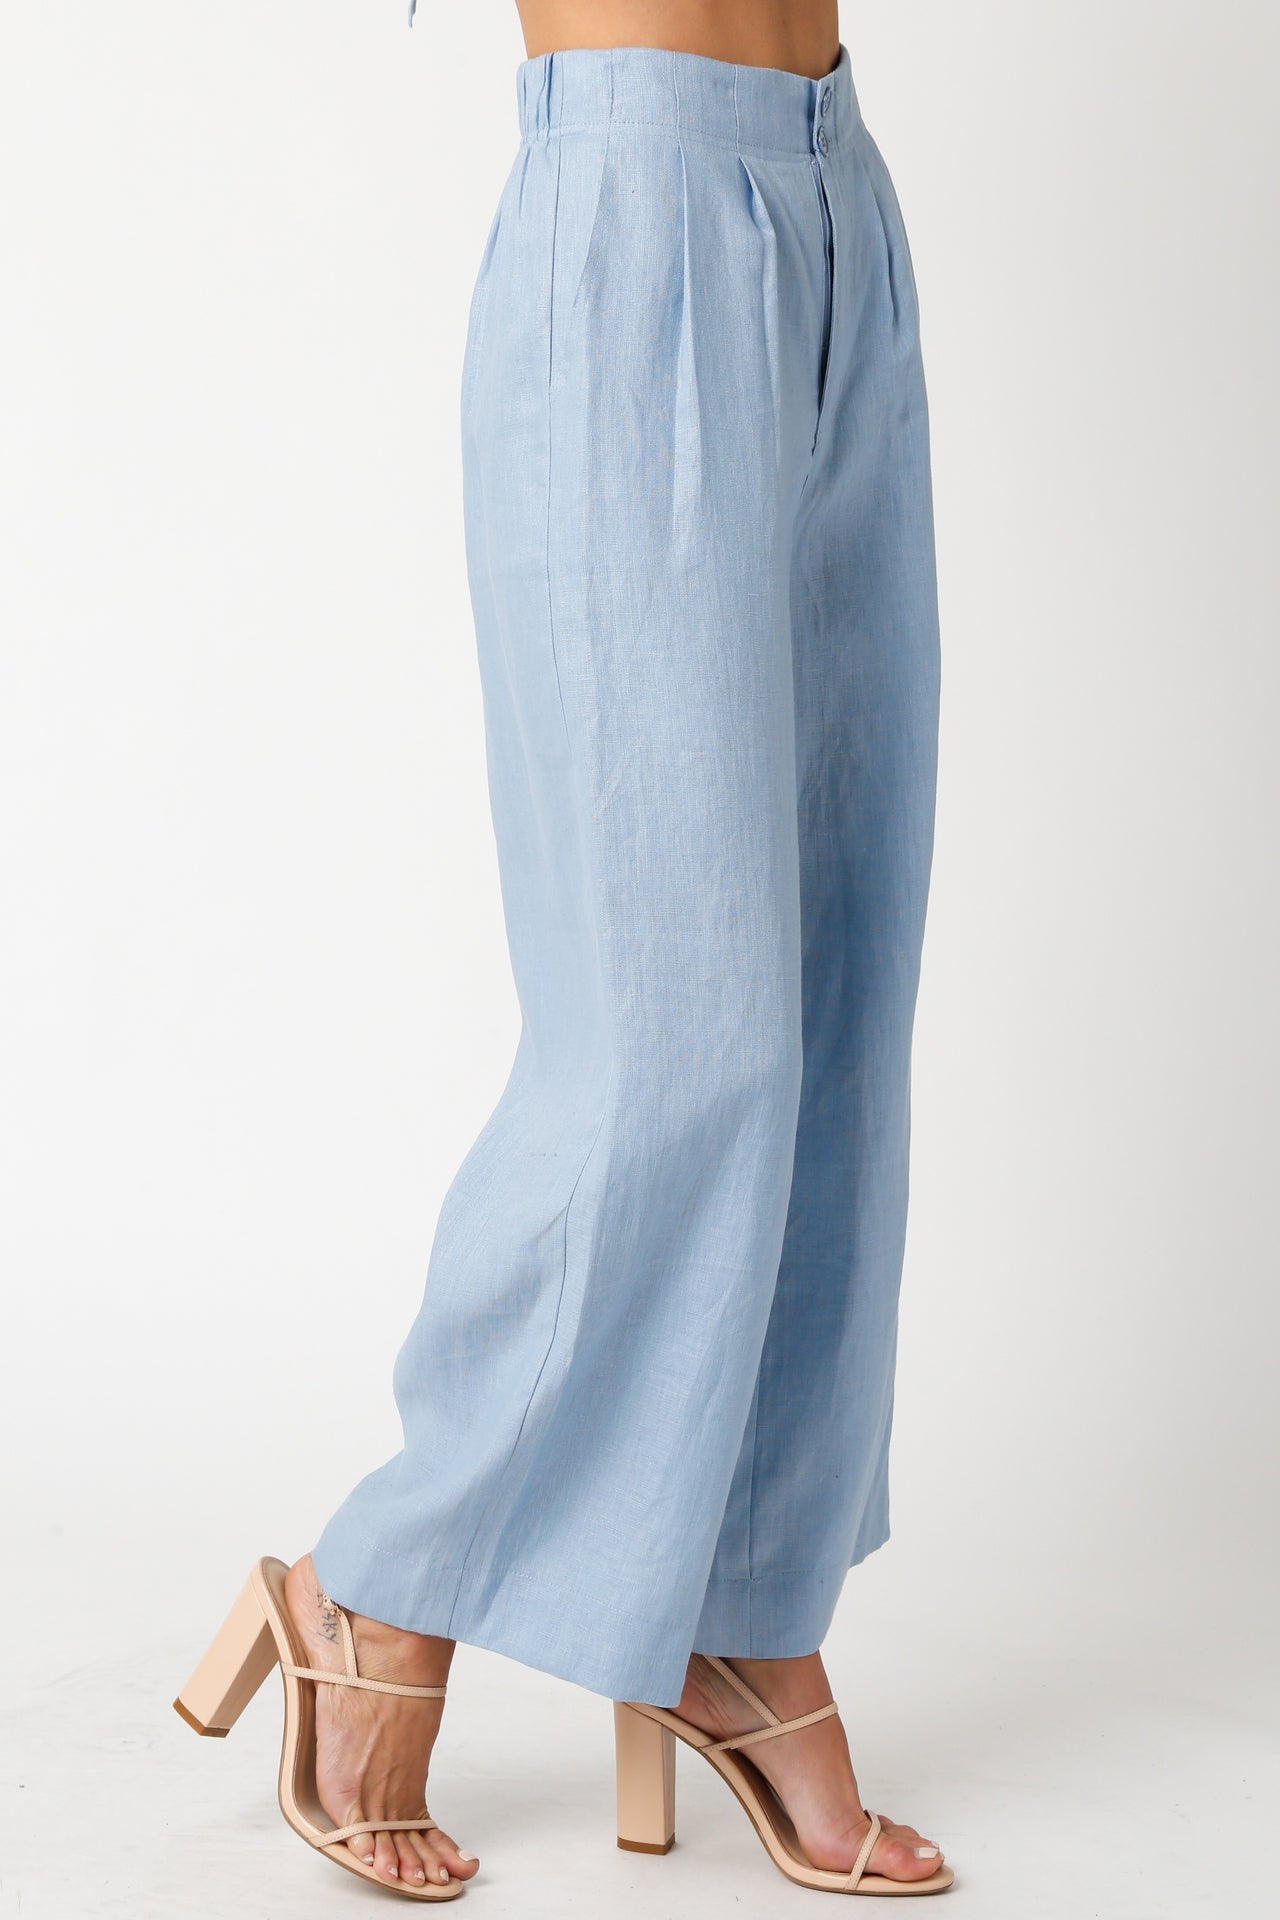 Make It Count Pants Blue, Pant Bottom by Olivaceous | LIT Boutique